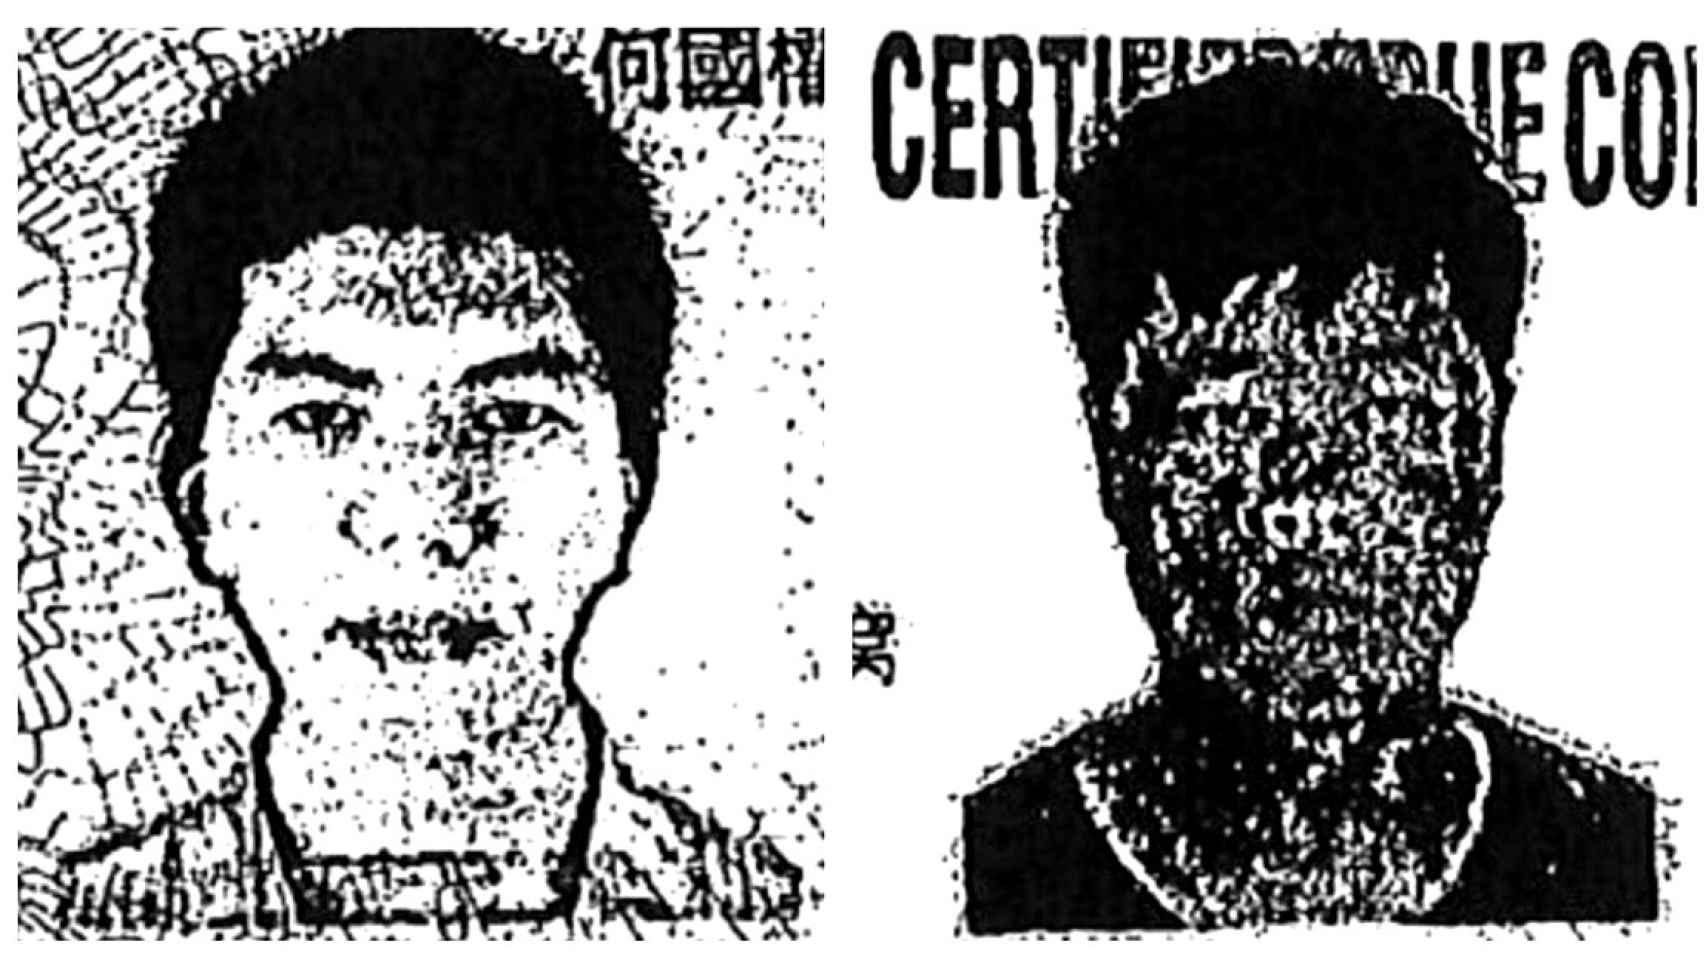 Li Yuanxin y Zuo Jialing, los testaferros chinos condenados. EE